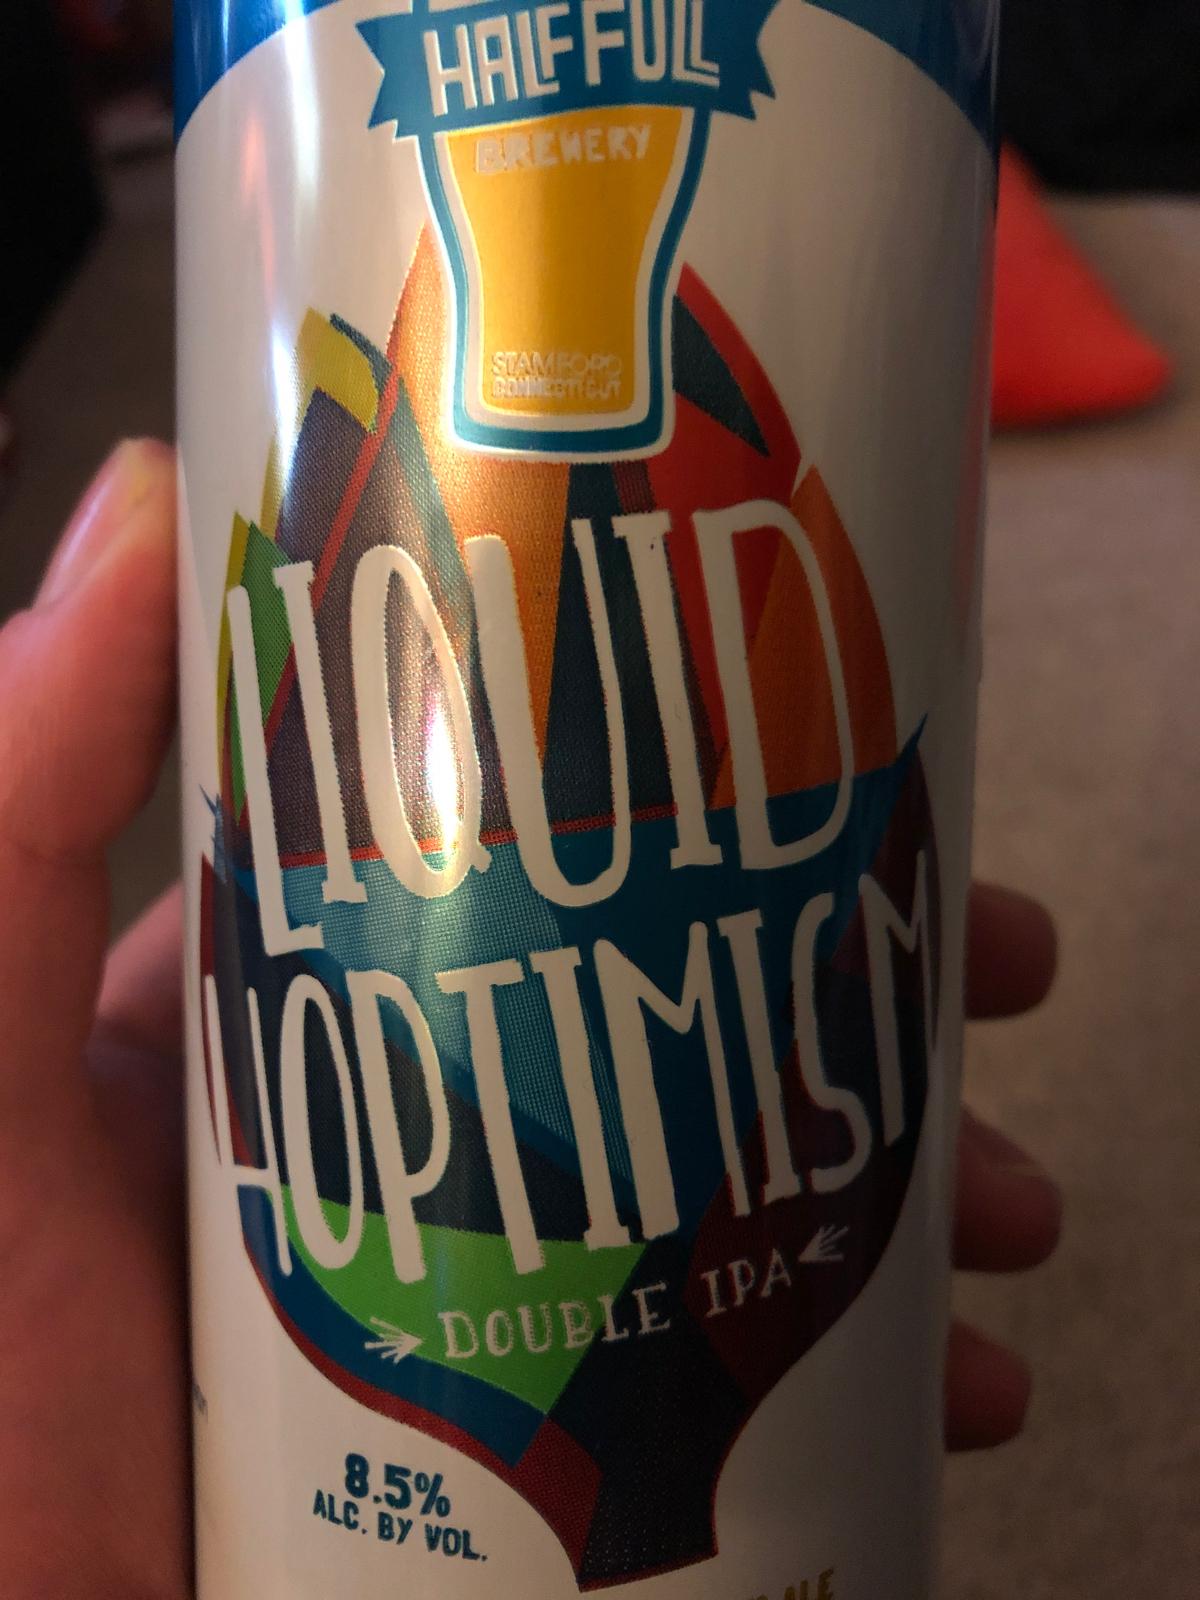 Liquid Hoptimism